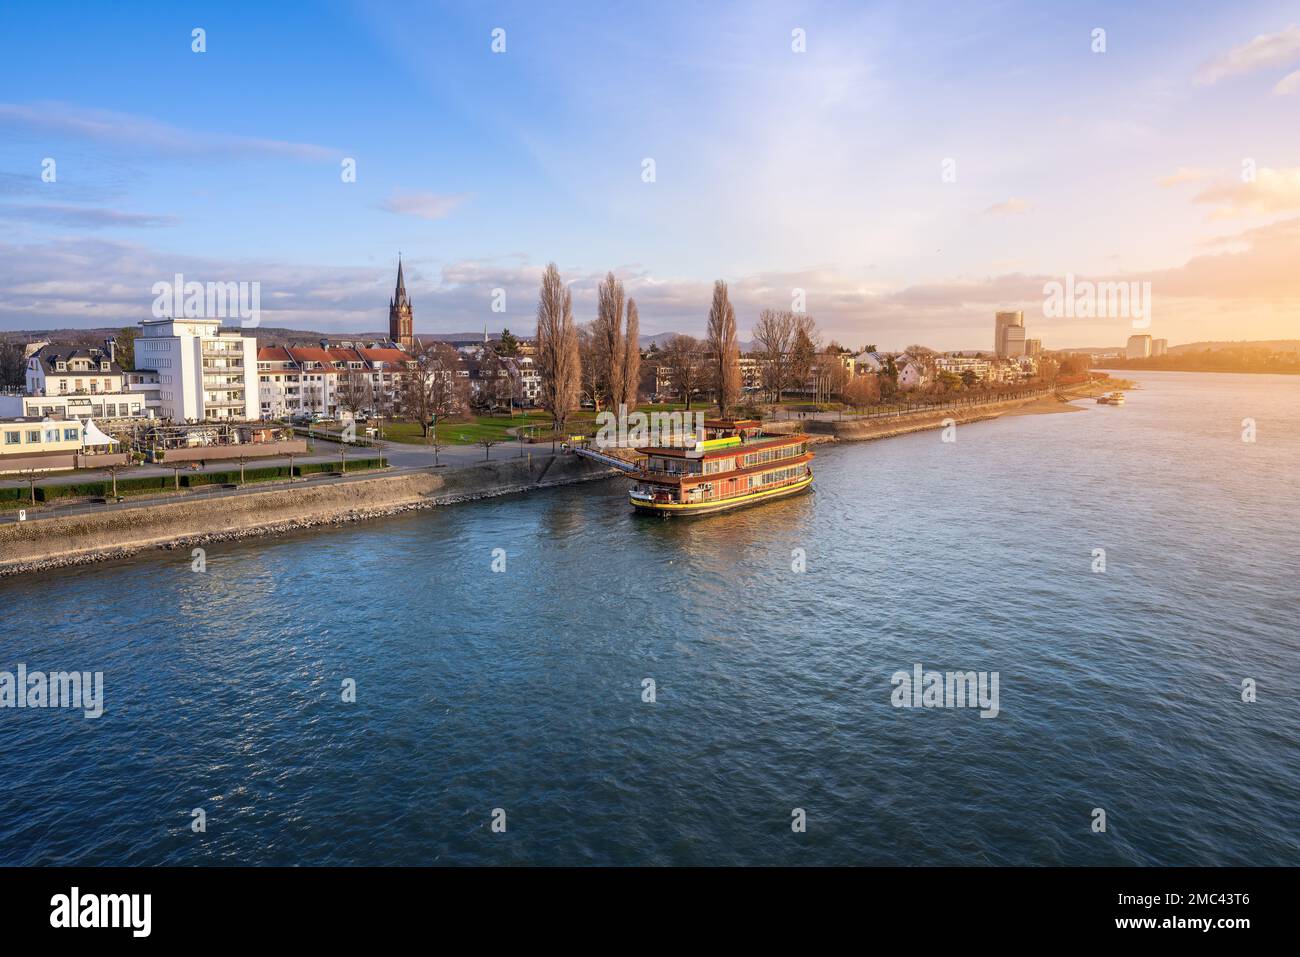 Skyline des Stadtteils Beuel und Rhein - Bonn, Deutschland Stockfoto